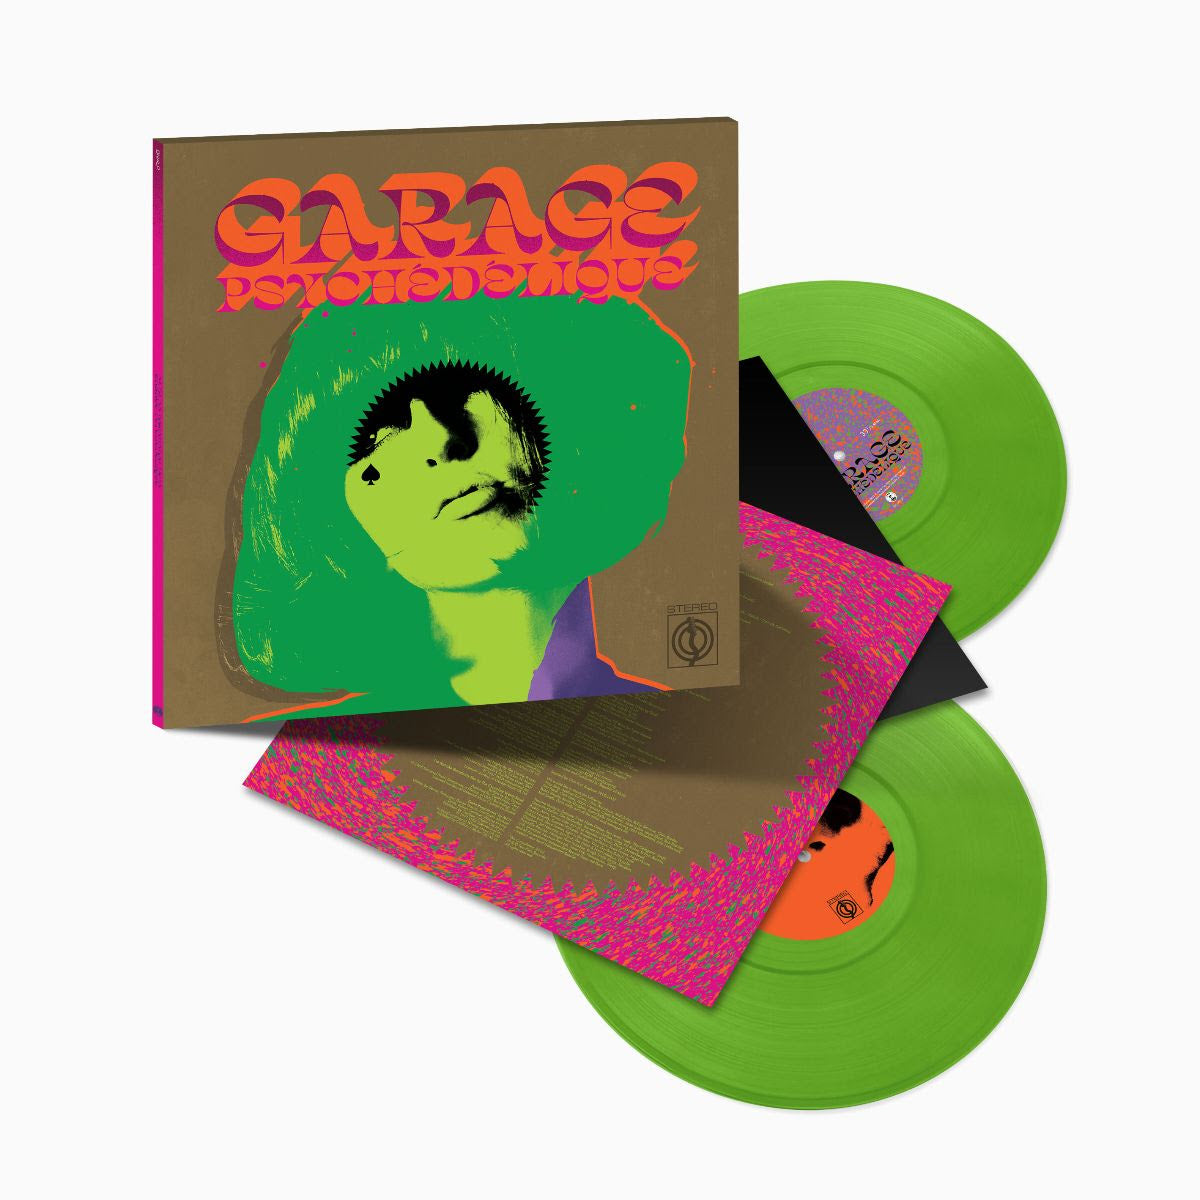 VARIOUS ARTISTS - Garage Psychédélique (The Best of Garage Psych & Pzyk Rock 1965-2019) - 2LP - Transparent Lime Vinyl